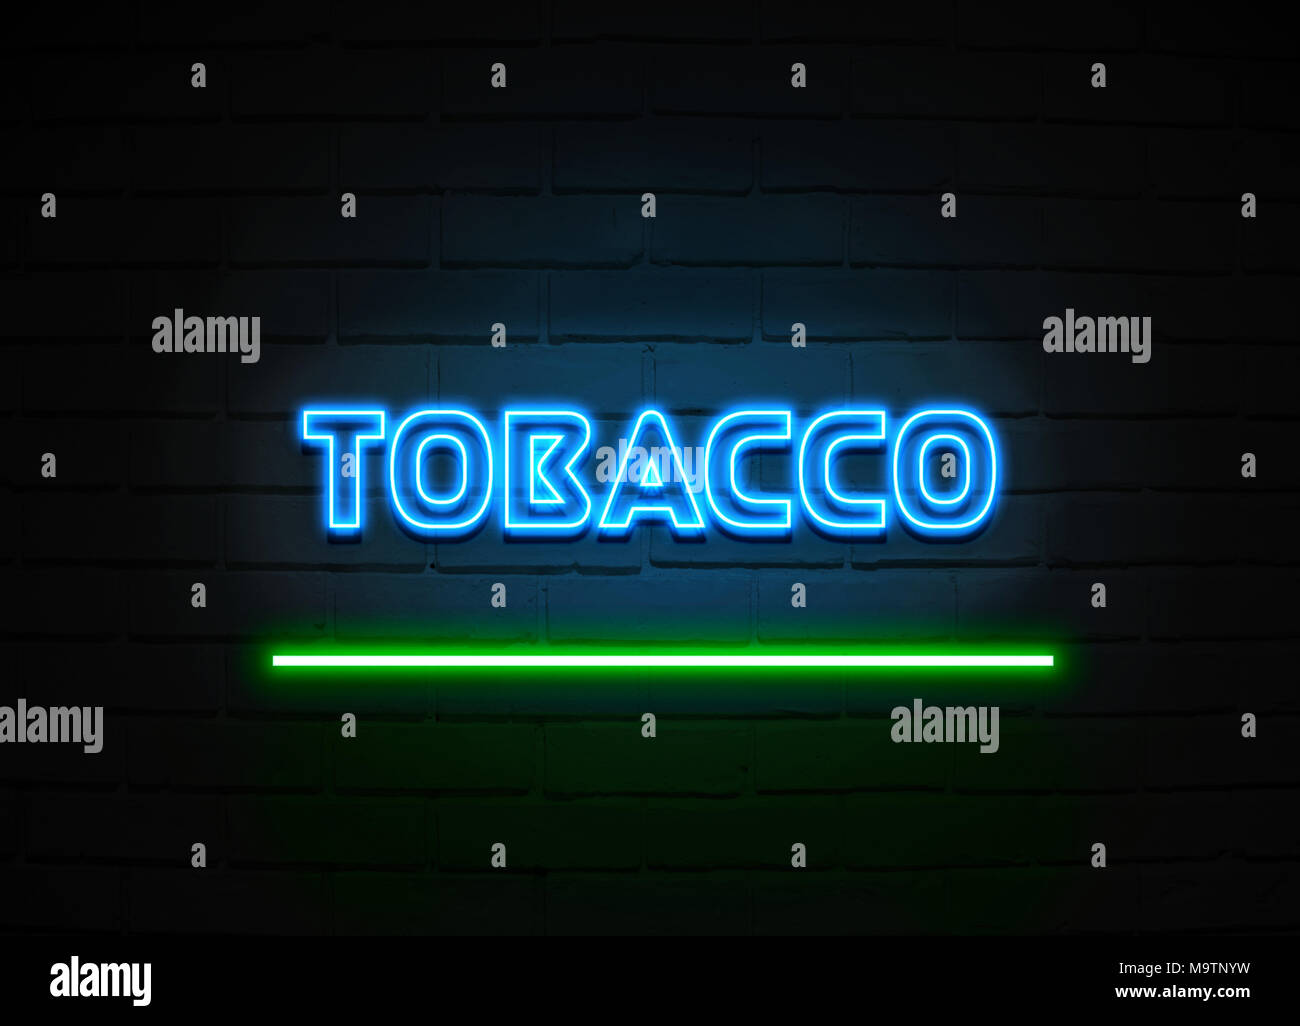 Enseigne au néon du tabac - Glowing Neon Sign sur mur brickwall - rendu 3D illustration libres de droits. Banque D'Images